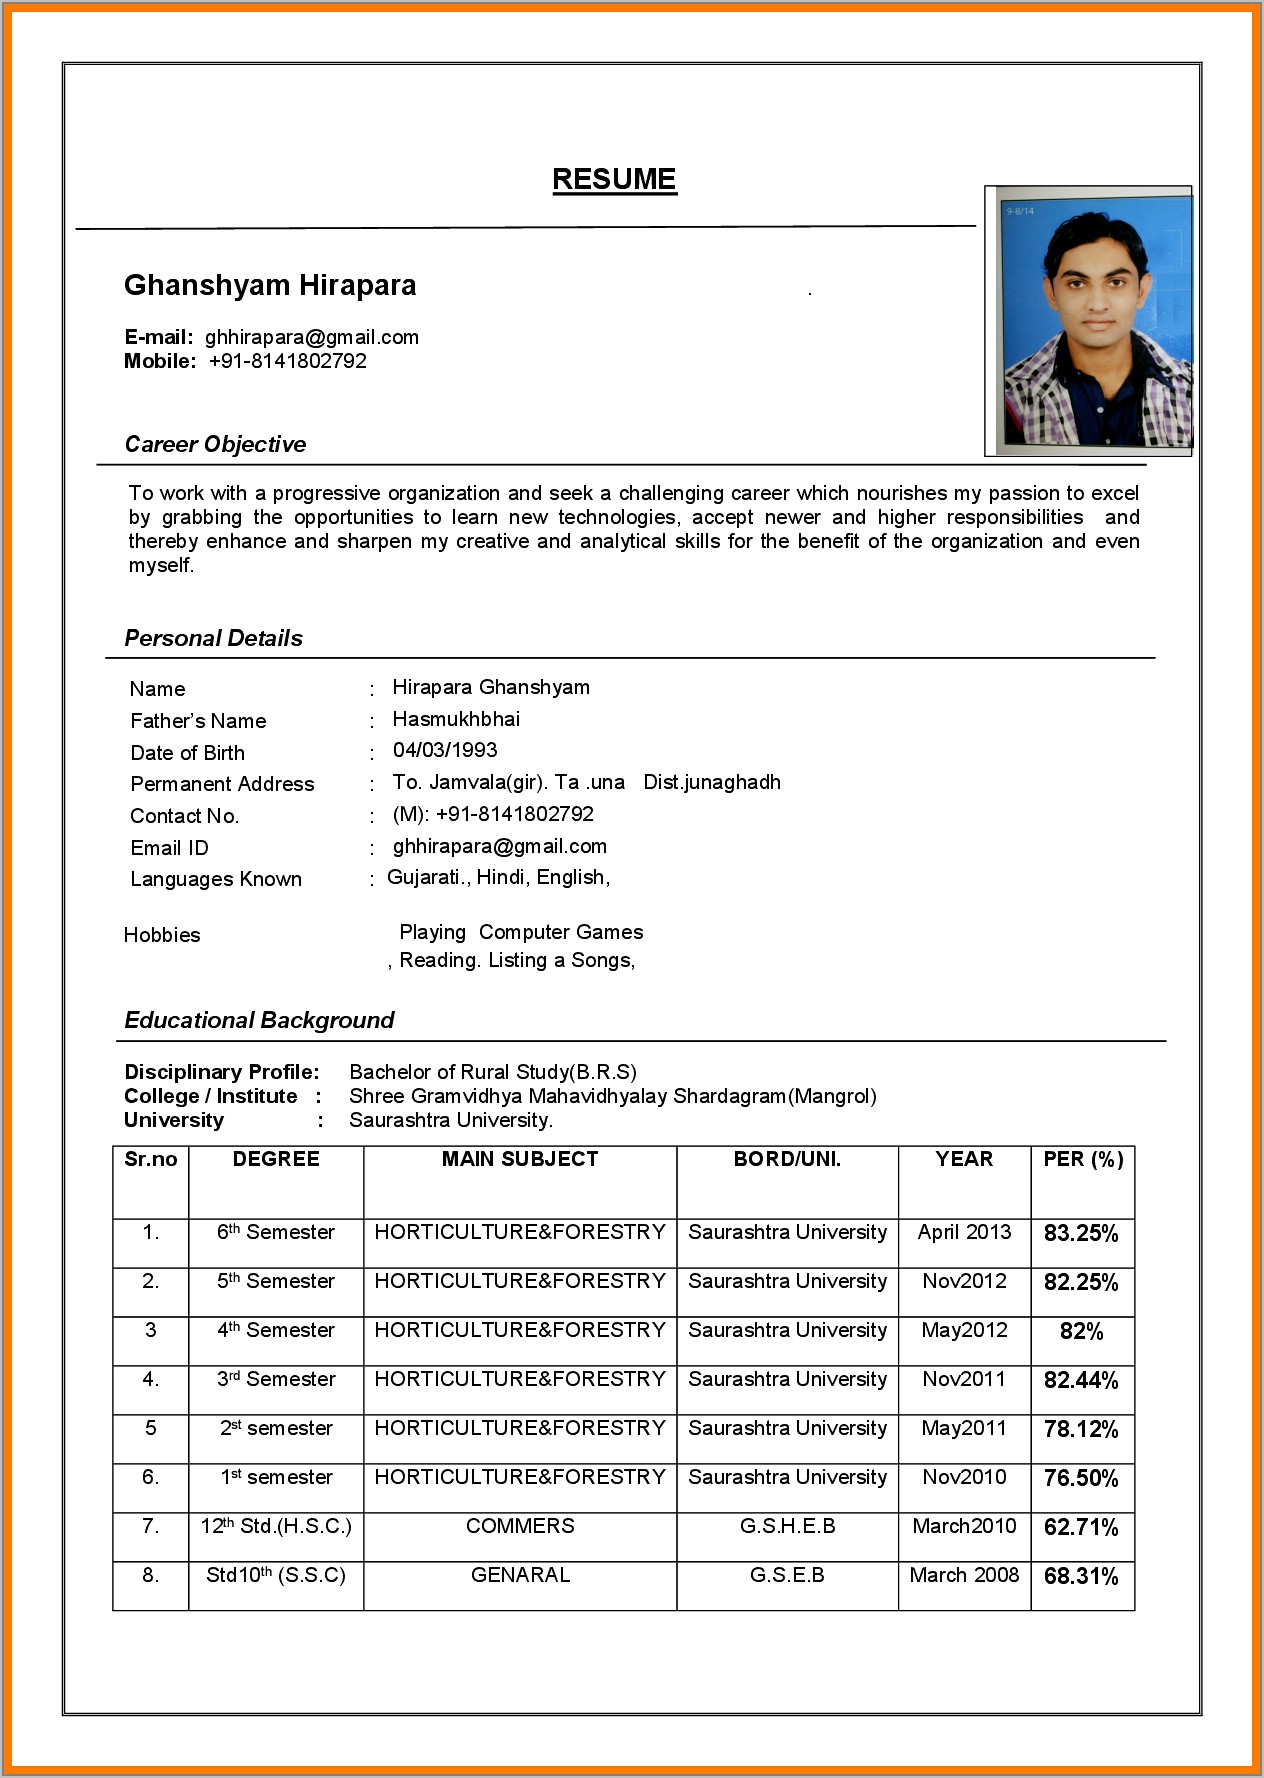 Sample Resume Format Doc Download